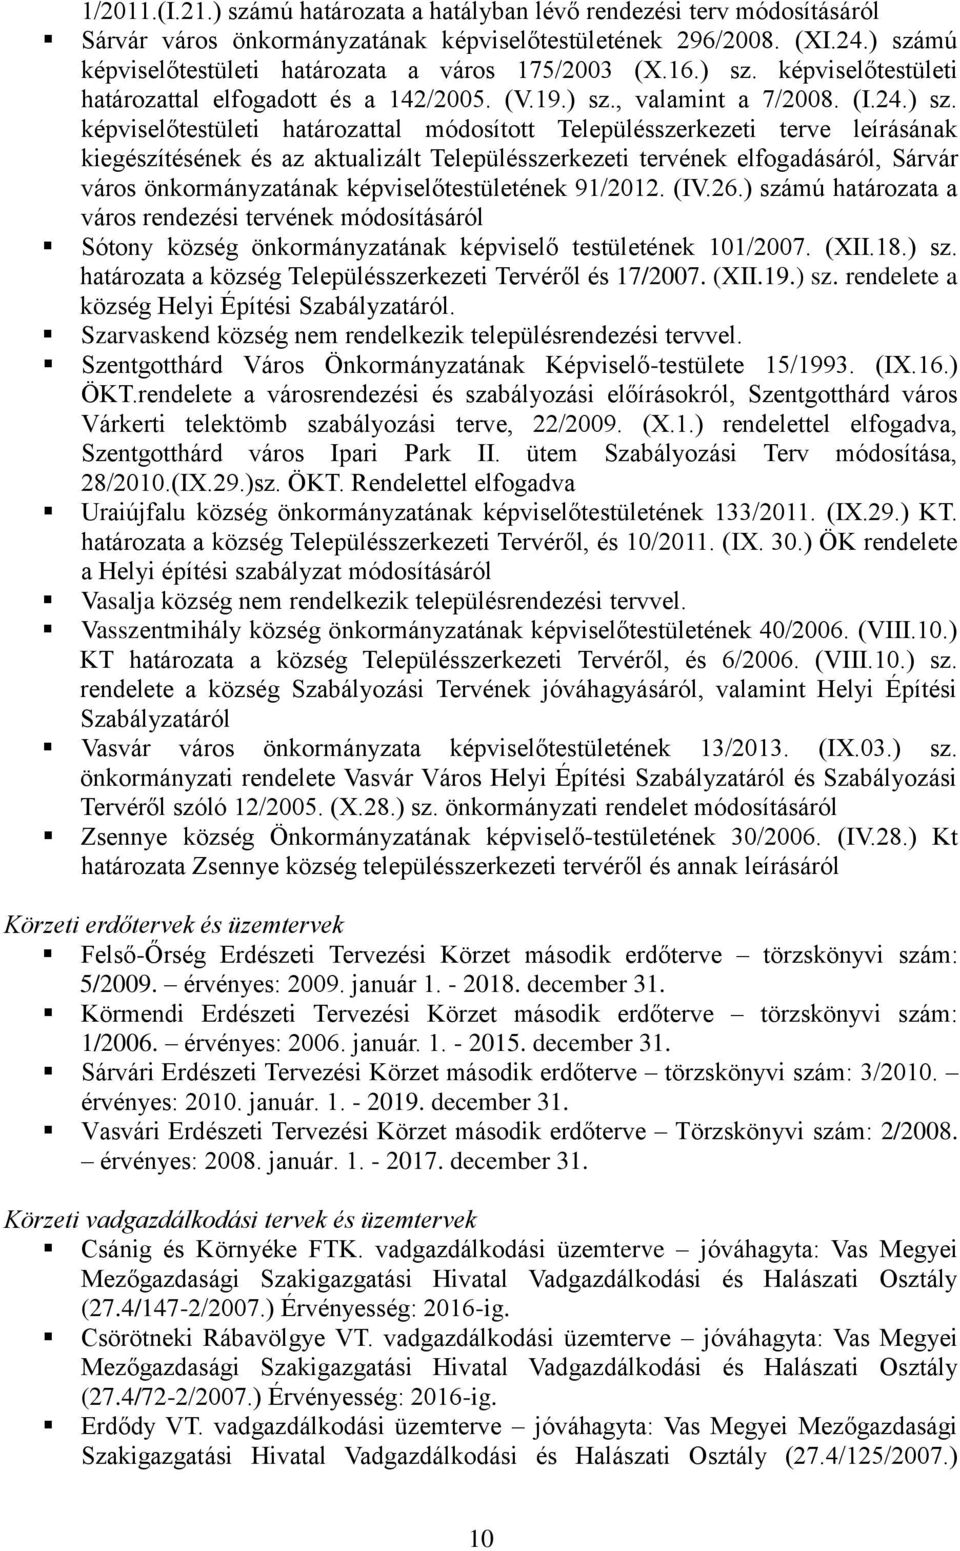 határozattal módosított Településszerkezeti terve leírásának kiegészítésének és az aktualizált Településszerkezeti tervének elfogadásáról, Sárvár város önkormányzatának képviselőtestületének 91/2012.